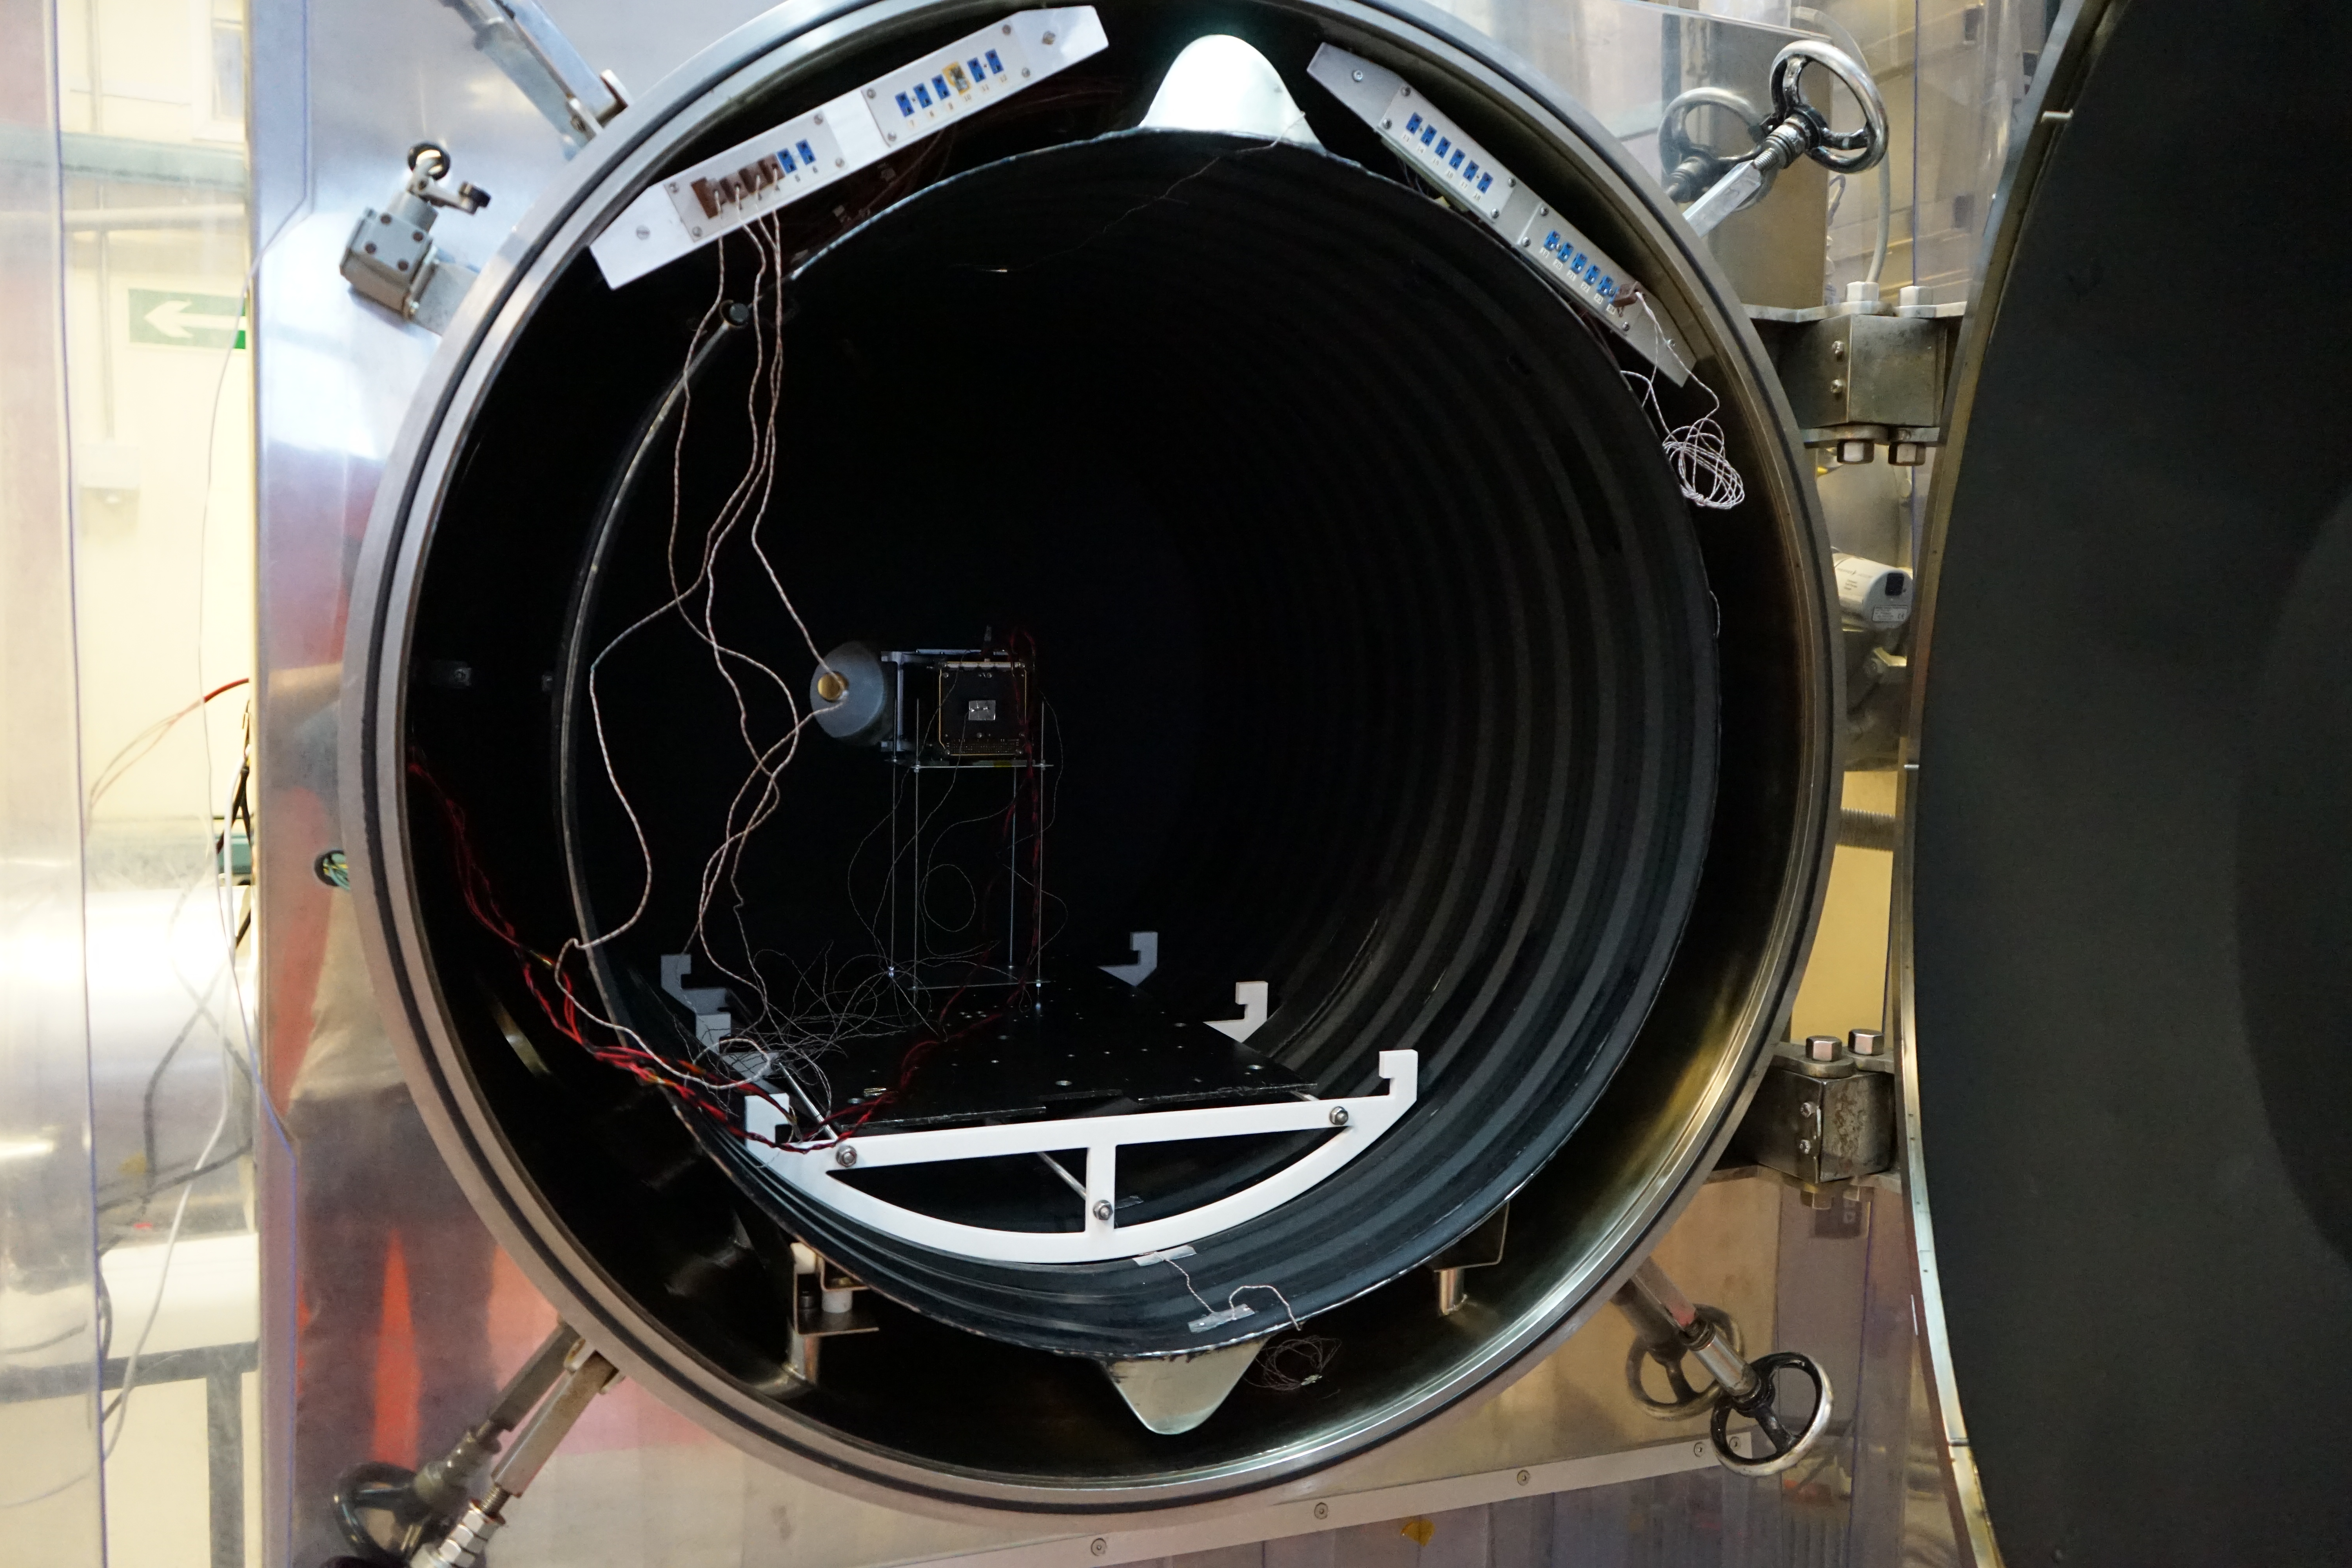 Imagen del instrumento DRAGO en el interior de la cámara de termo-vacío. Imagen tomada en las instalaciones del Área de Ensayos del INTA (Instituto Nacional de Técnica Aeroespacial). Crédito: Samuel Sordo (IAC).